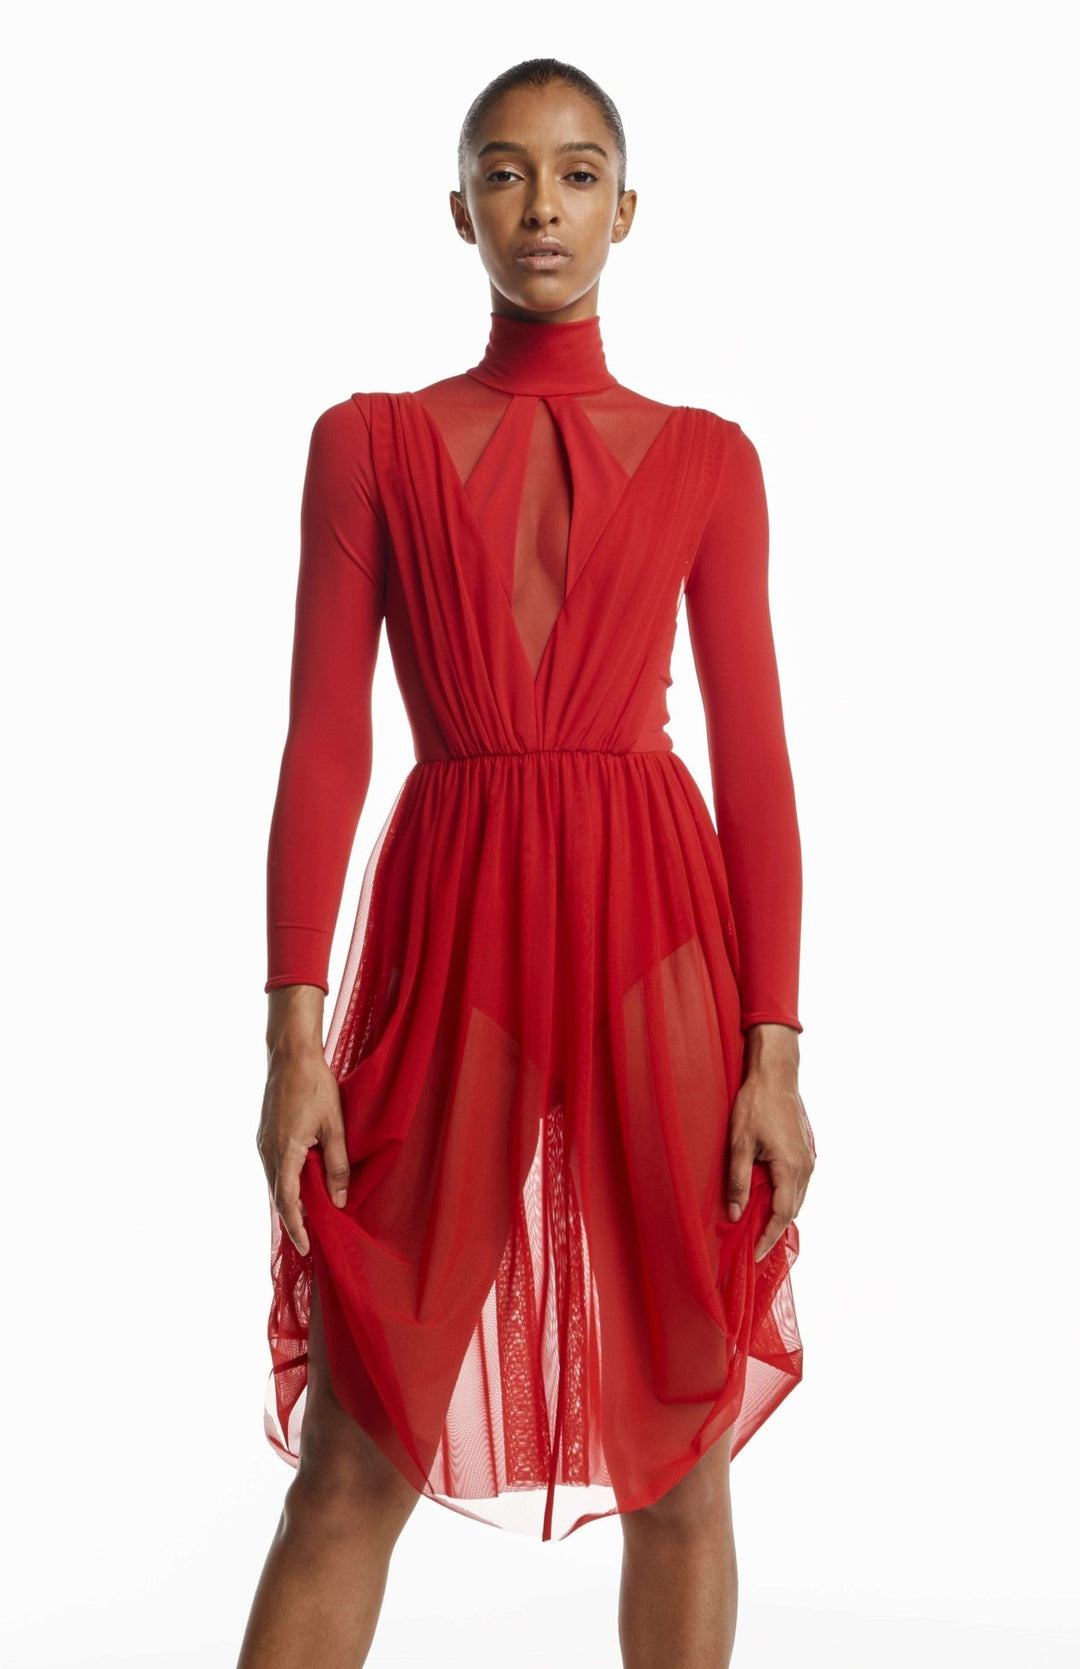 elegant red bodysuit dress with sheer skirt